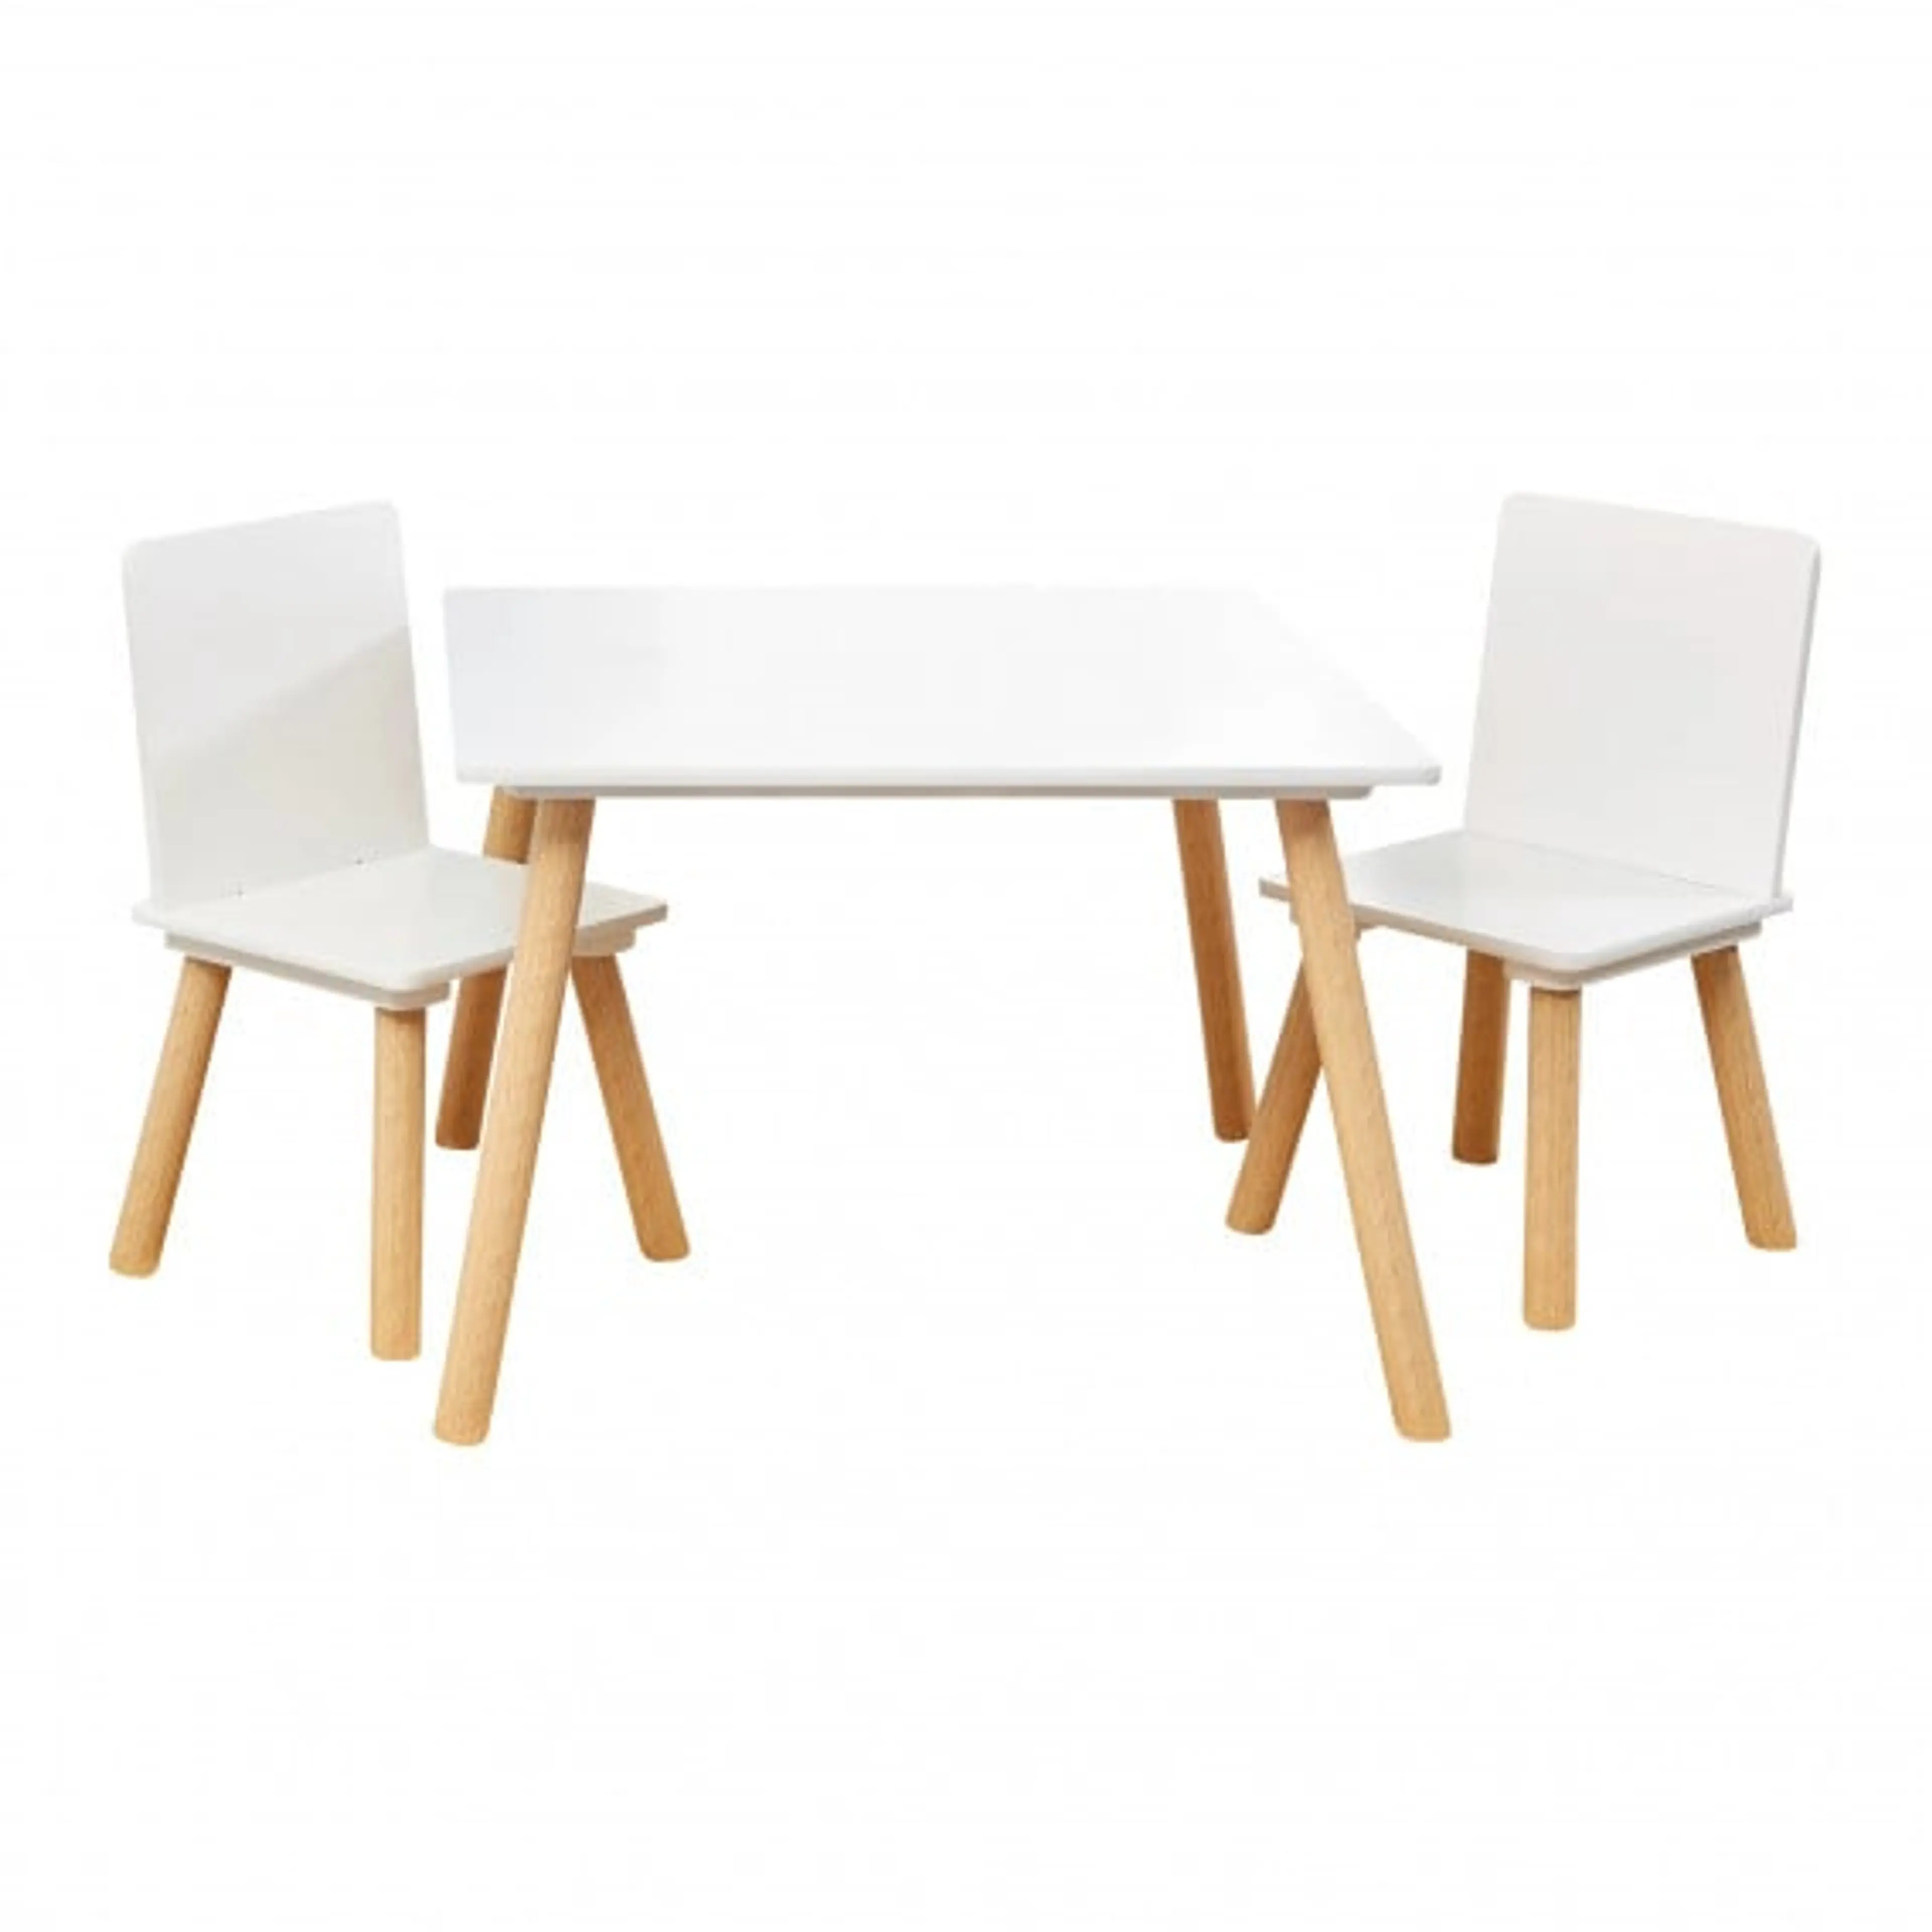 Дeтска дървeна маса с 2 столчeта - за игра, рисуванe, хранeнe